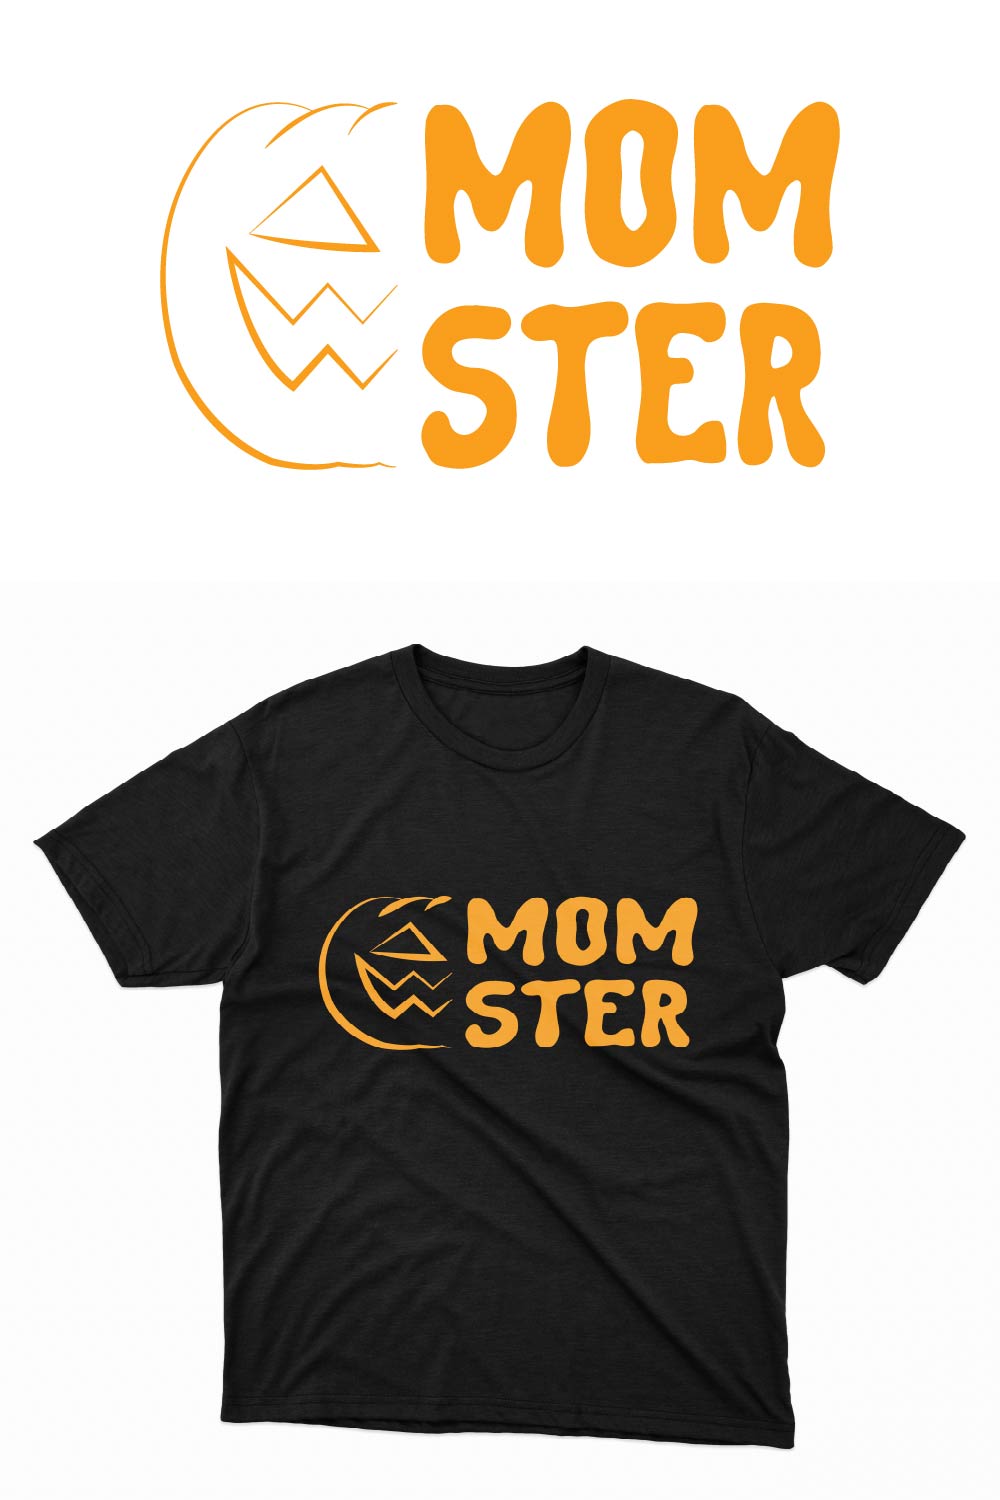 Momster Halloween T-shirt pinterest image